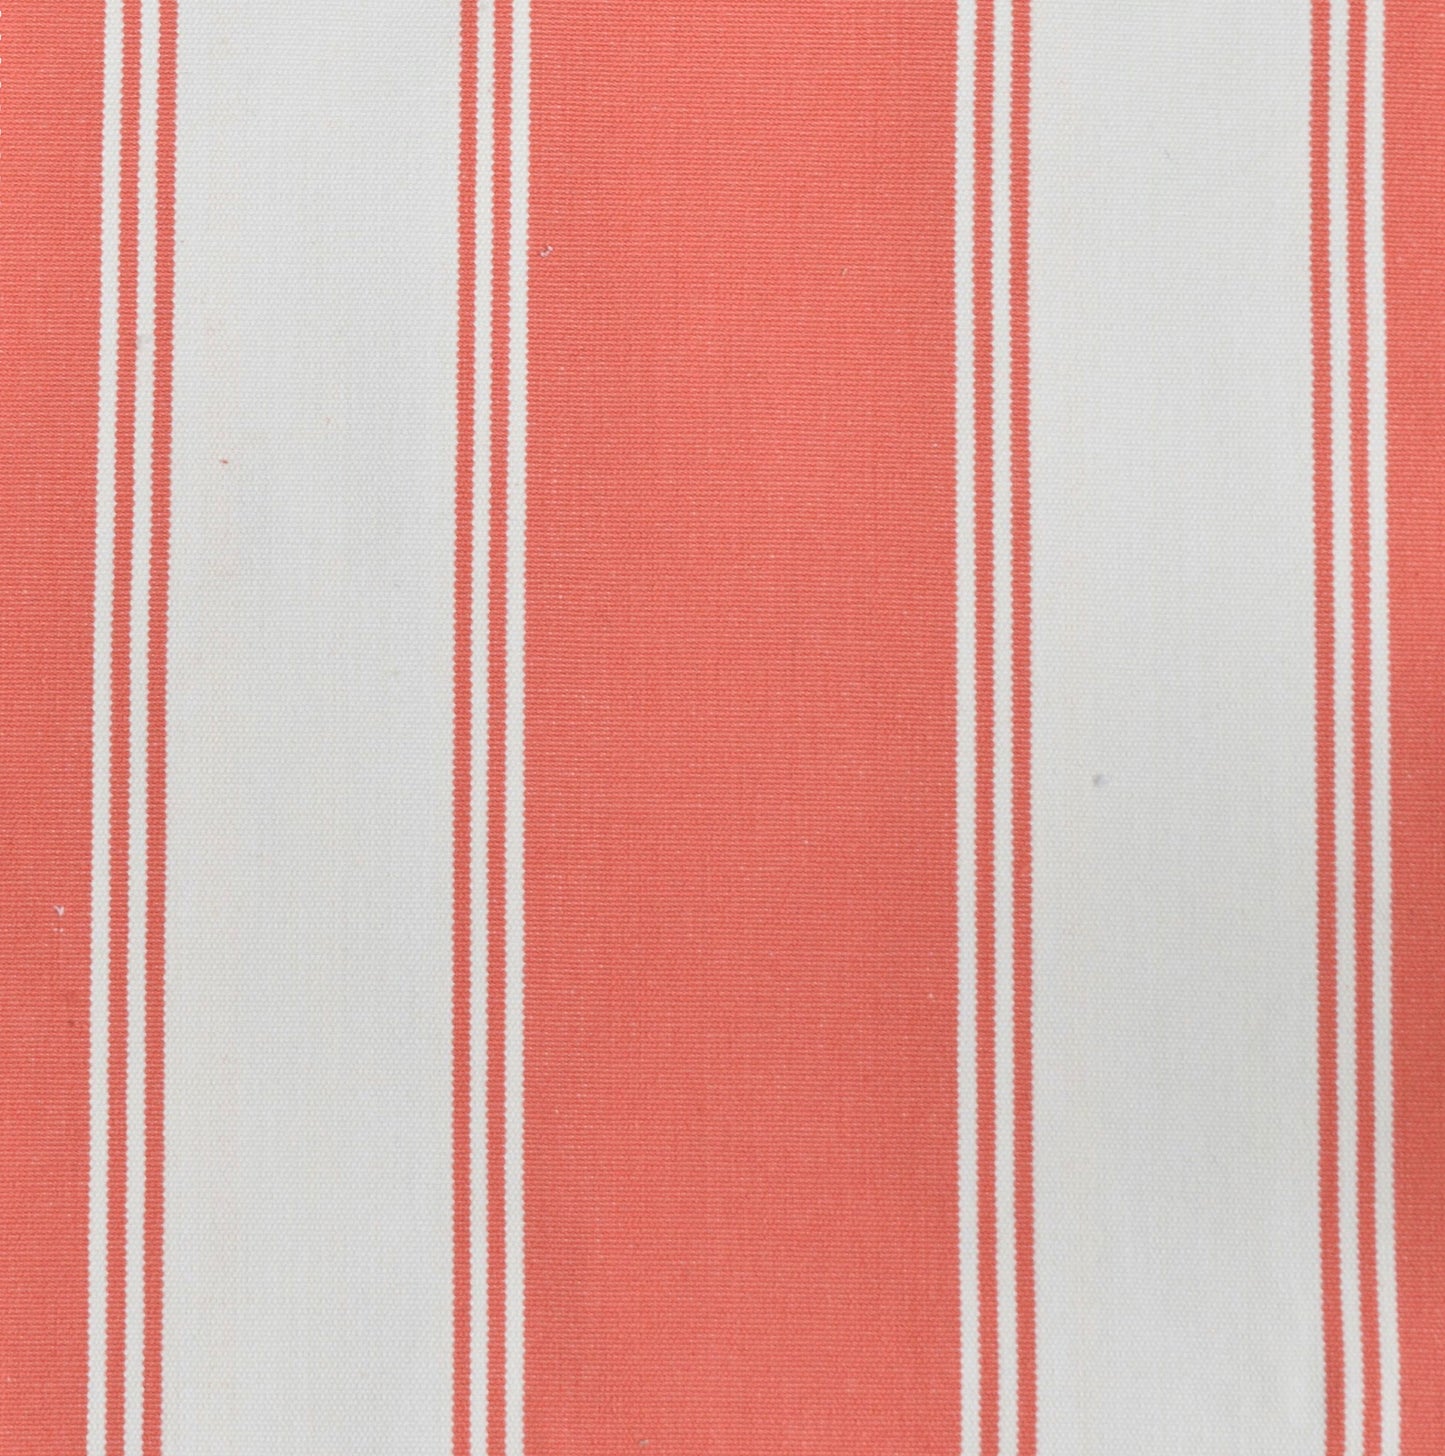 Palm Springs Gunmetal Sofa - Coral & Cream Stripe Cushion